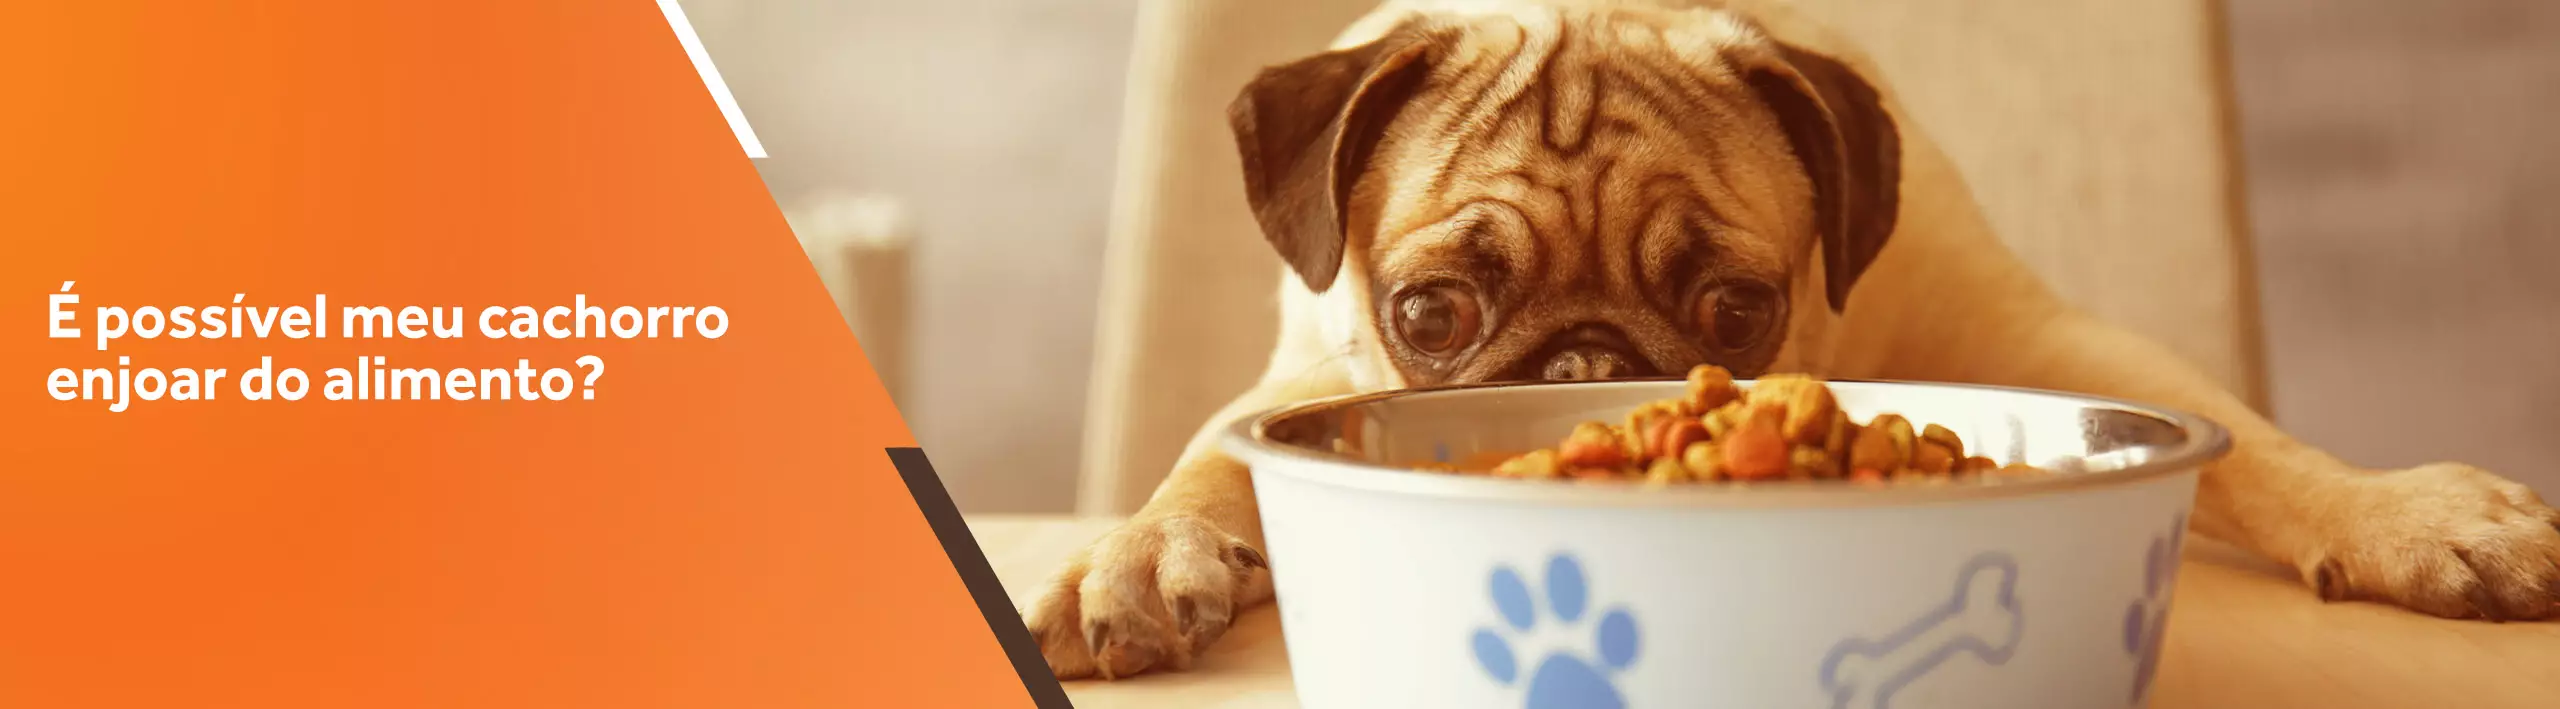 Blog de nutrologia | É possível meu cachorro enjoar do alimento?